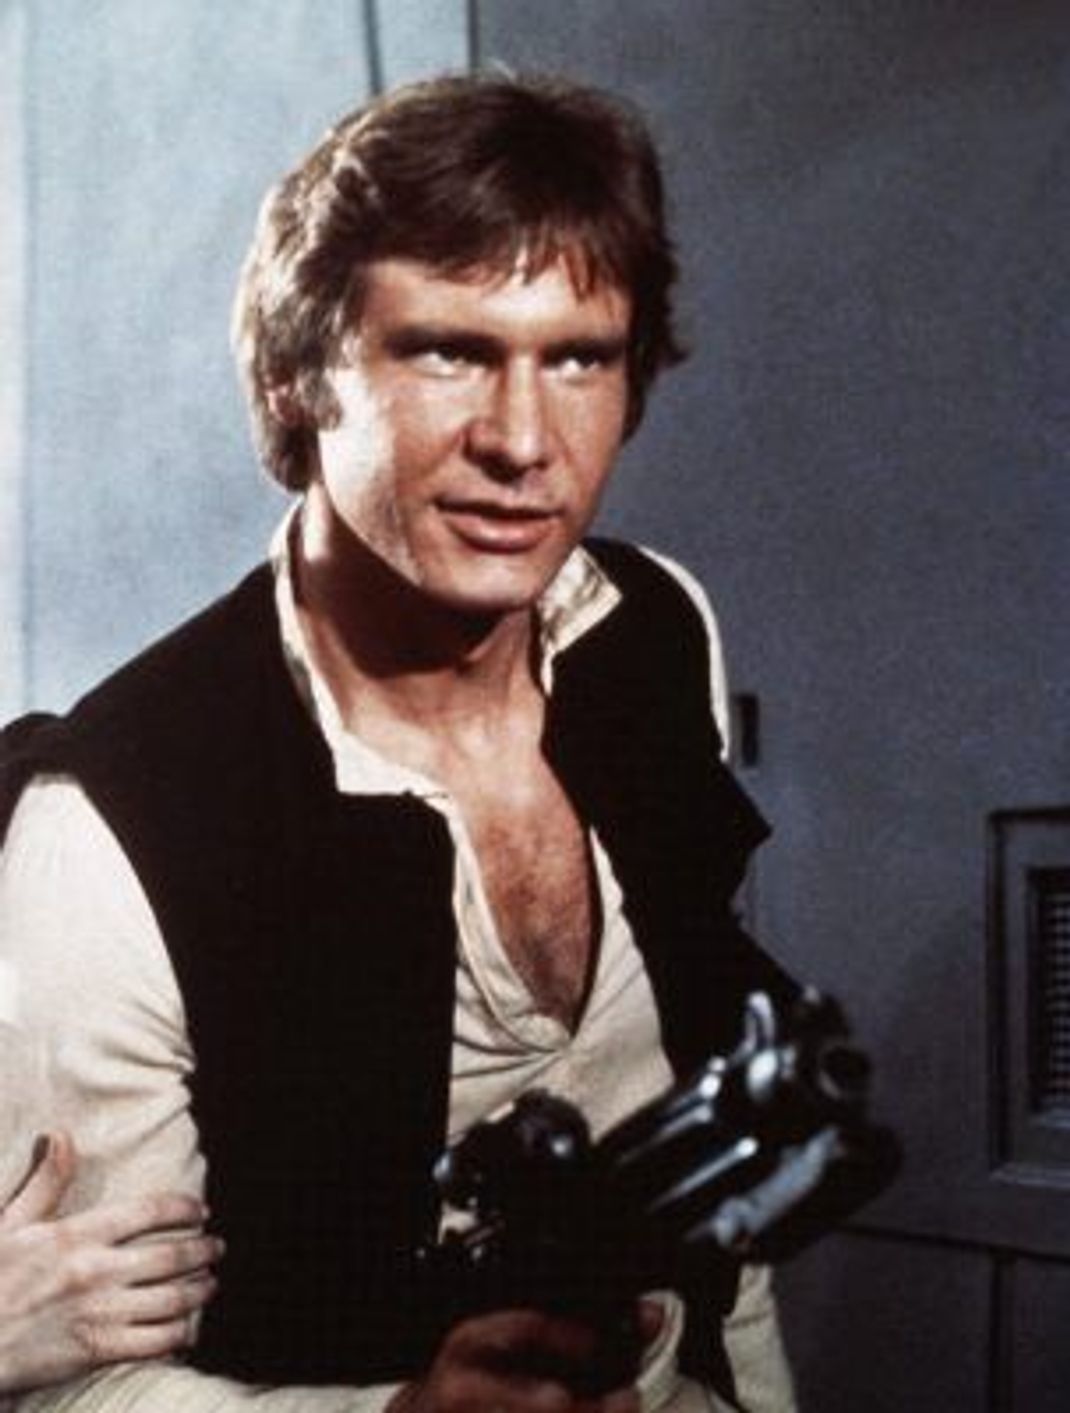 Der egozentrische Schmuggler Han Solo aus der "Star Wars"-Filmreihe ist ein typischer Antiheld.